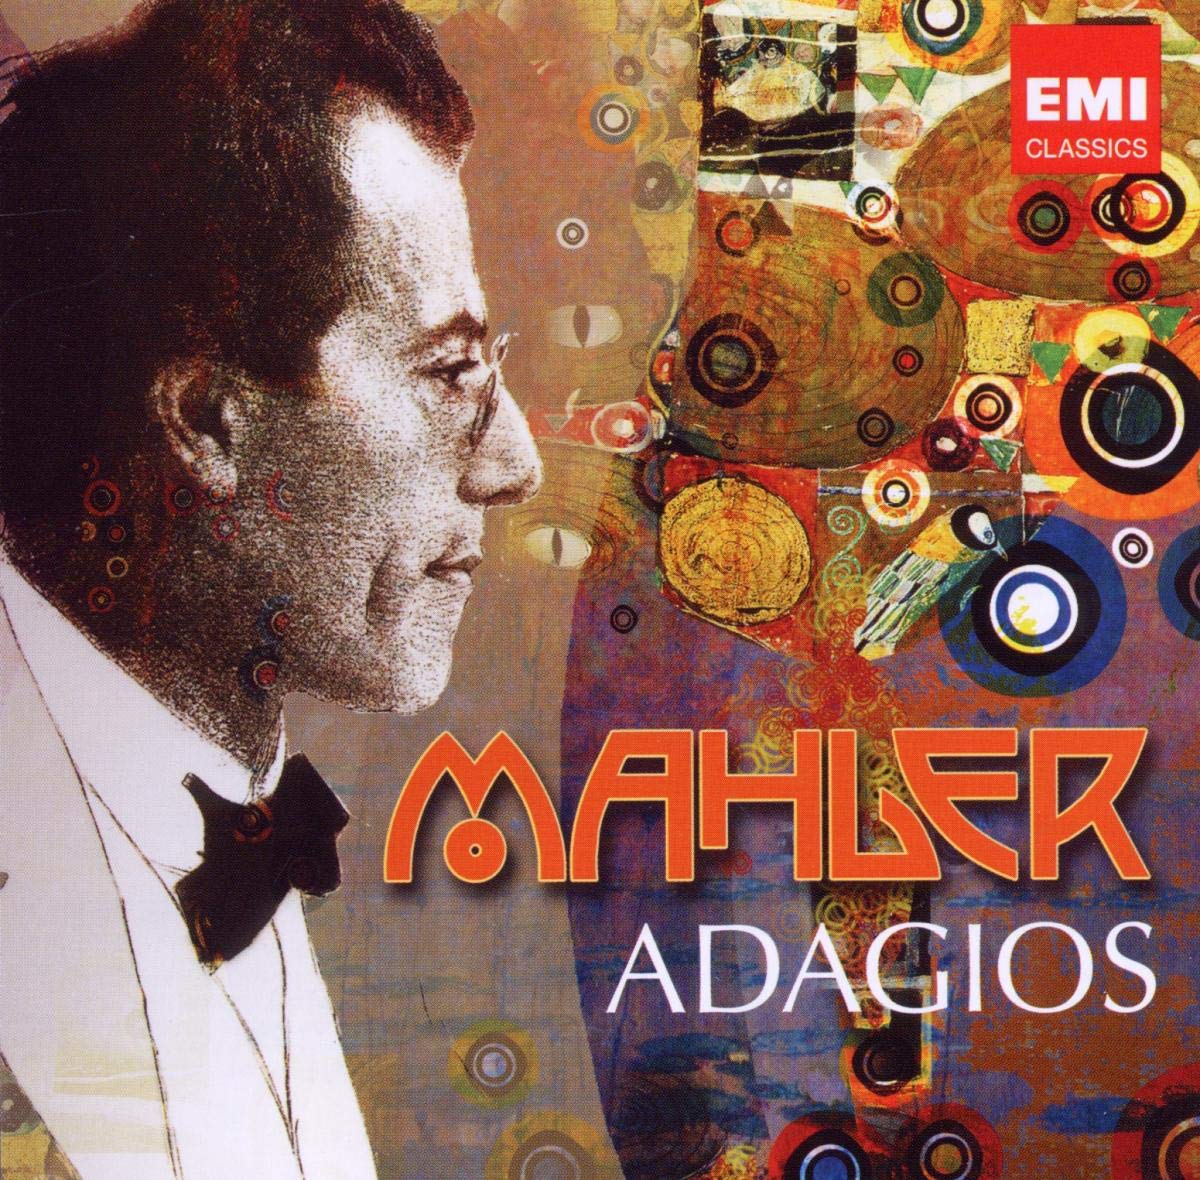 150th Anniversary: Mahler's Adagios